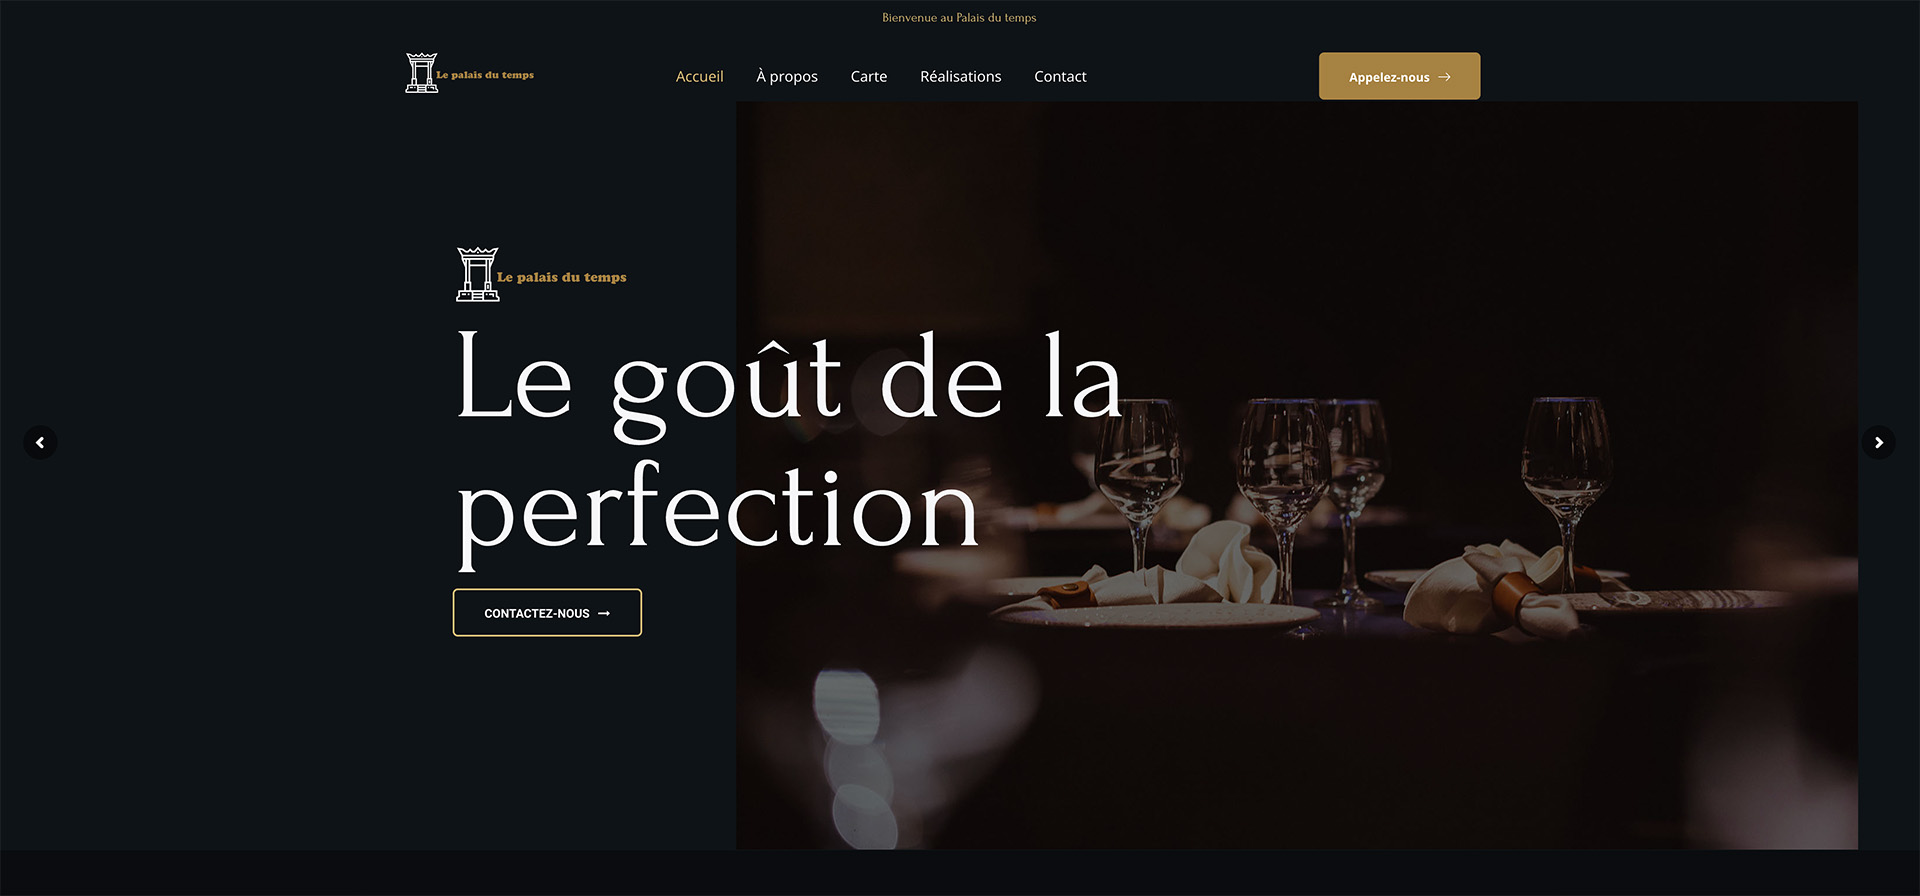 Design élégant du thème 'Restaurant', parfait pour les sites web de restaurants et de gastronomie.